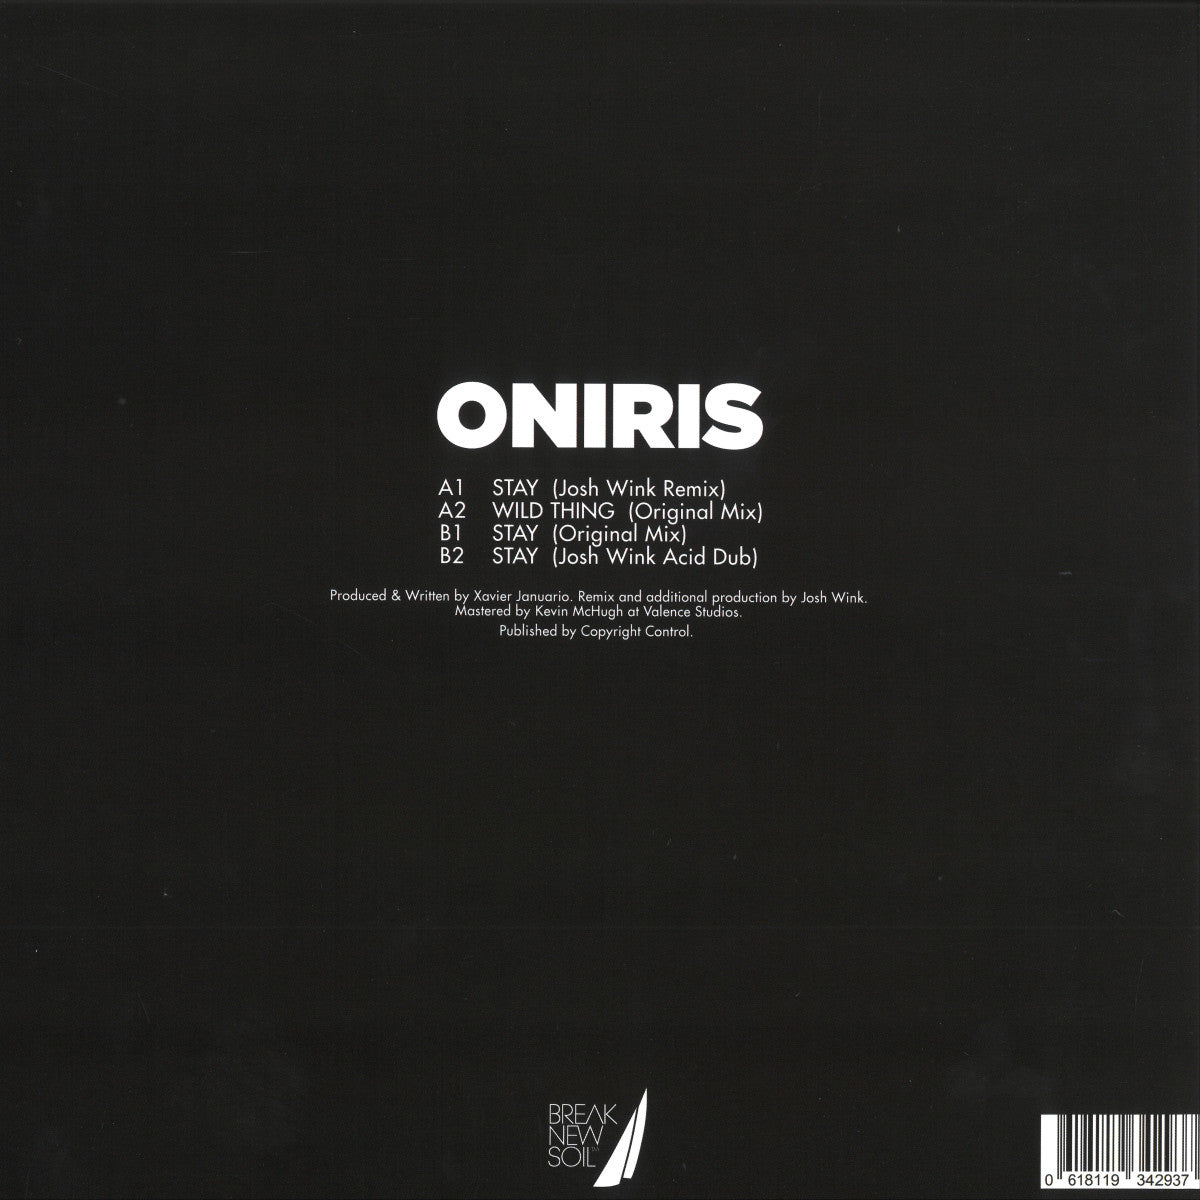 Oniris - Stay Incl. Josh Wink Remixes [Break New Soil]